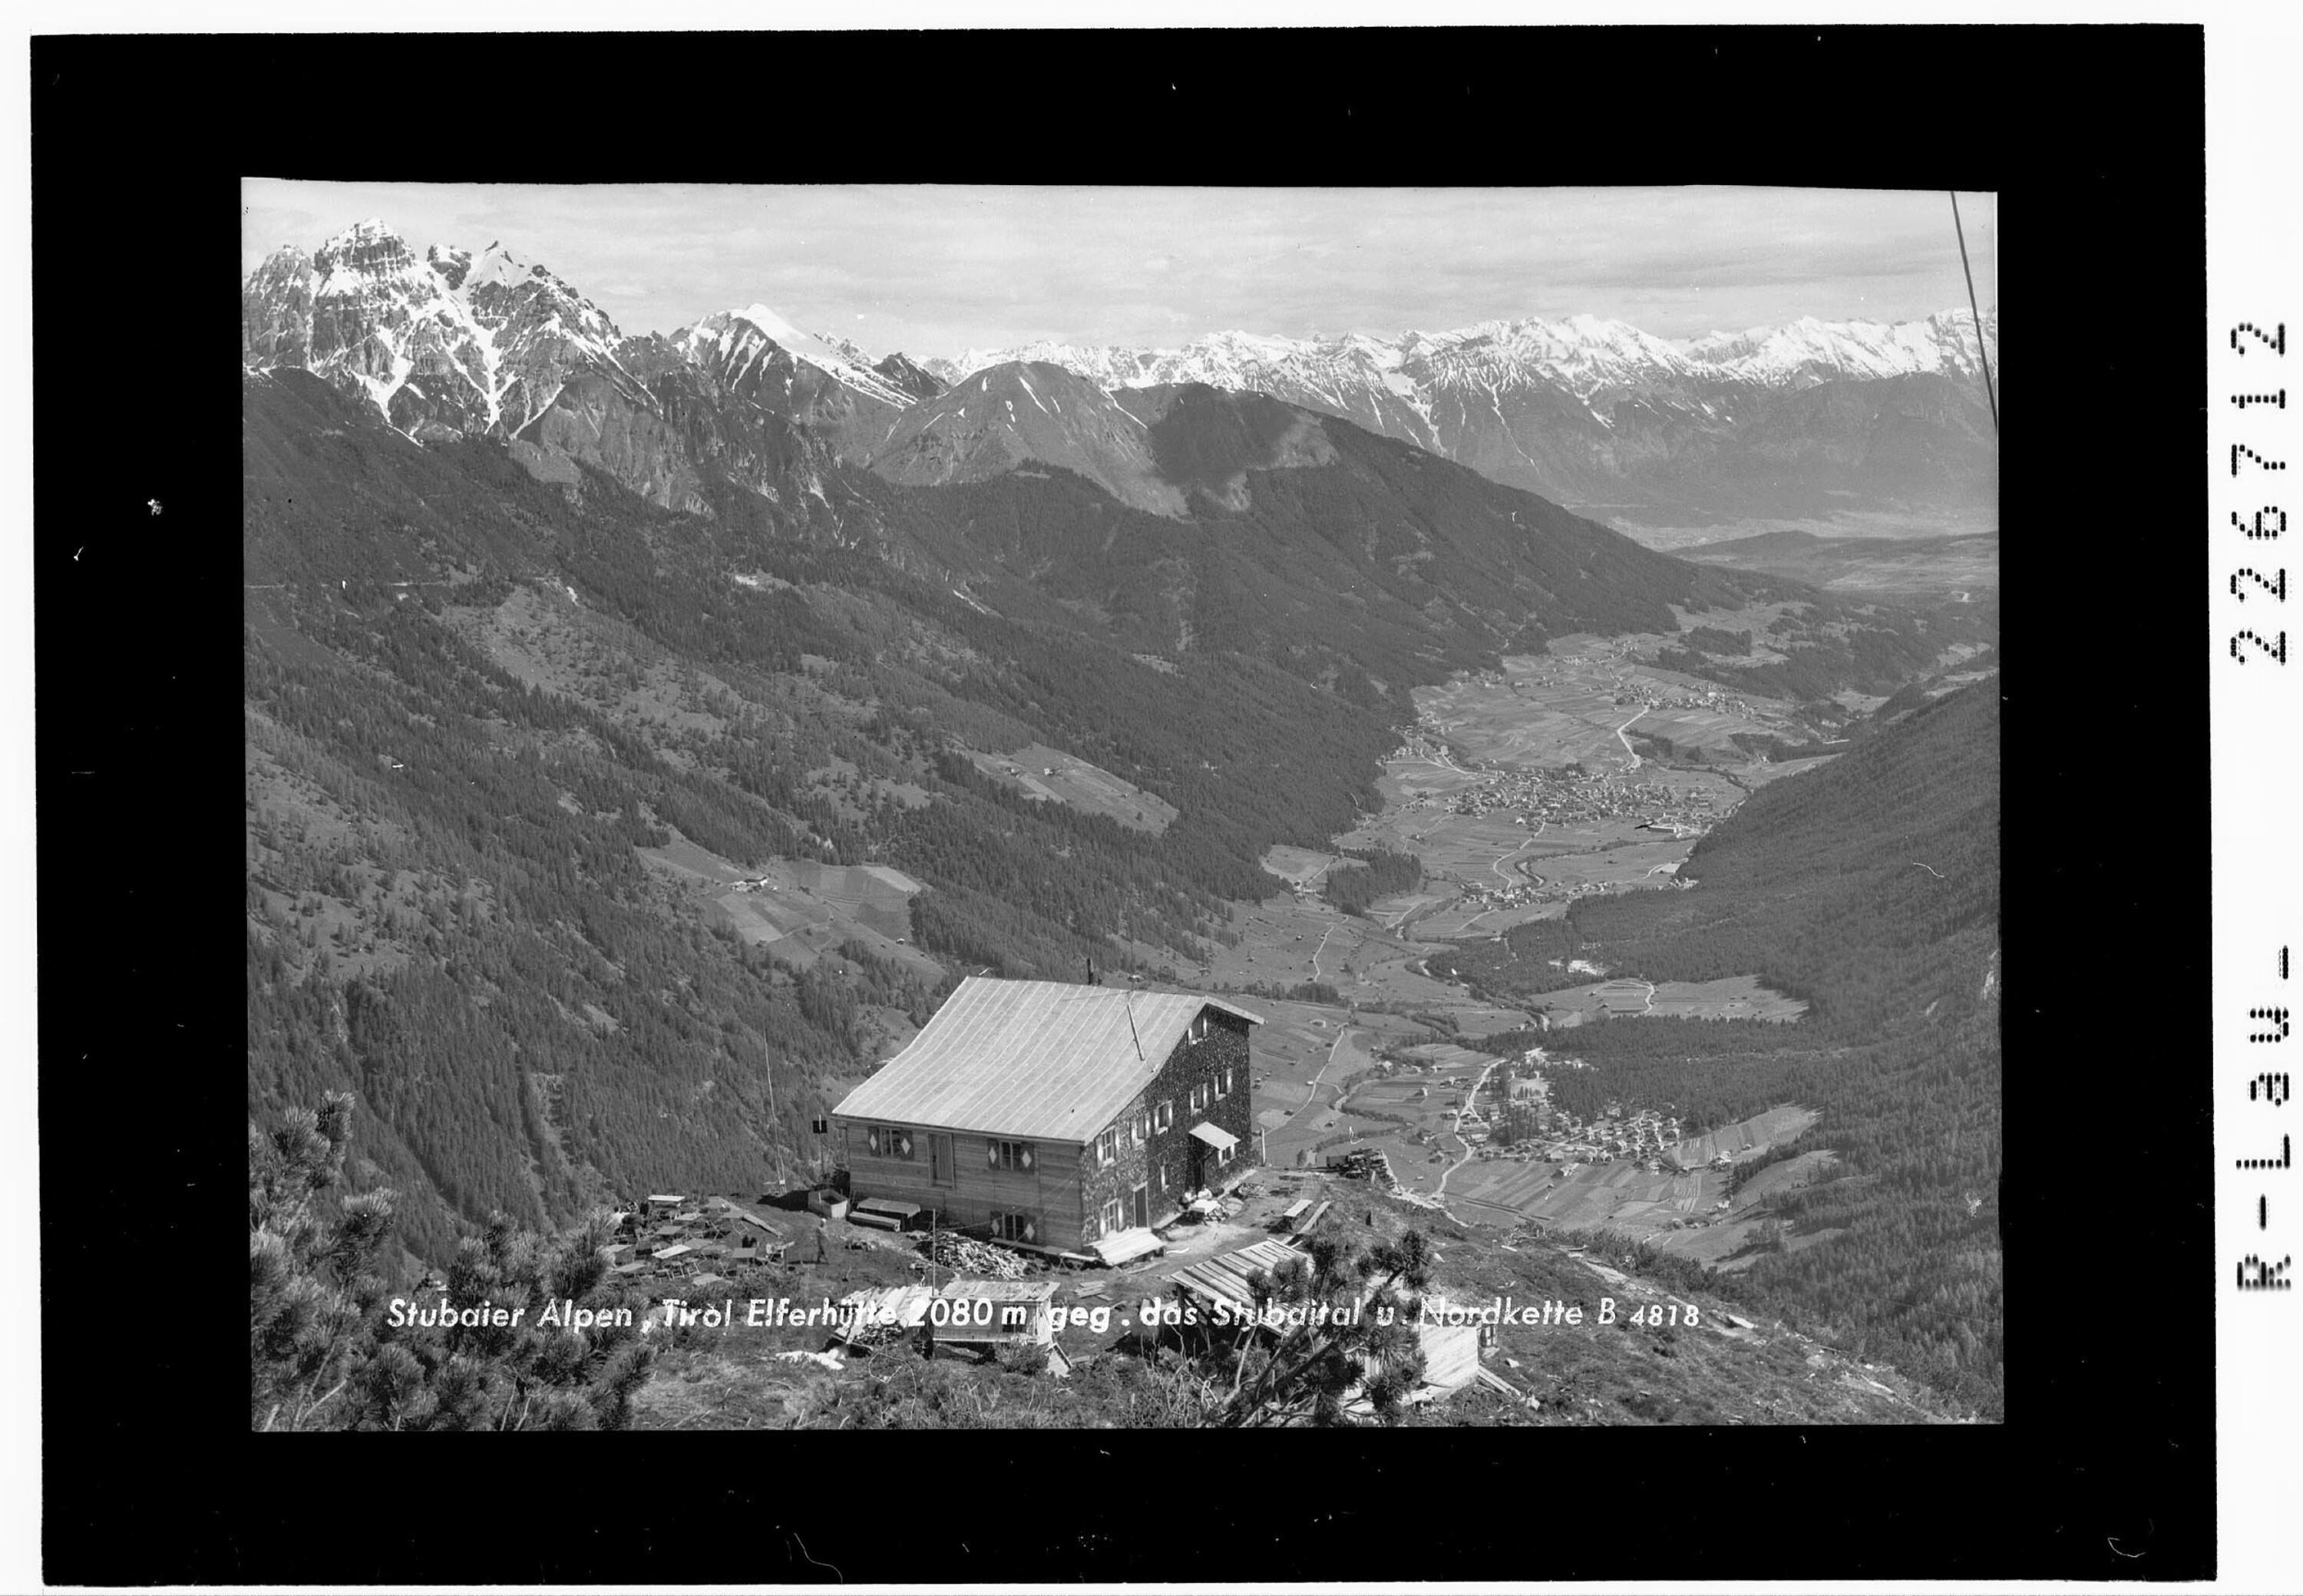 Stubaier Alpen / Tirol / Elferhütte 1950 m gegen Stubaital und Nordkette></div>


    <hr>
    <div class=